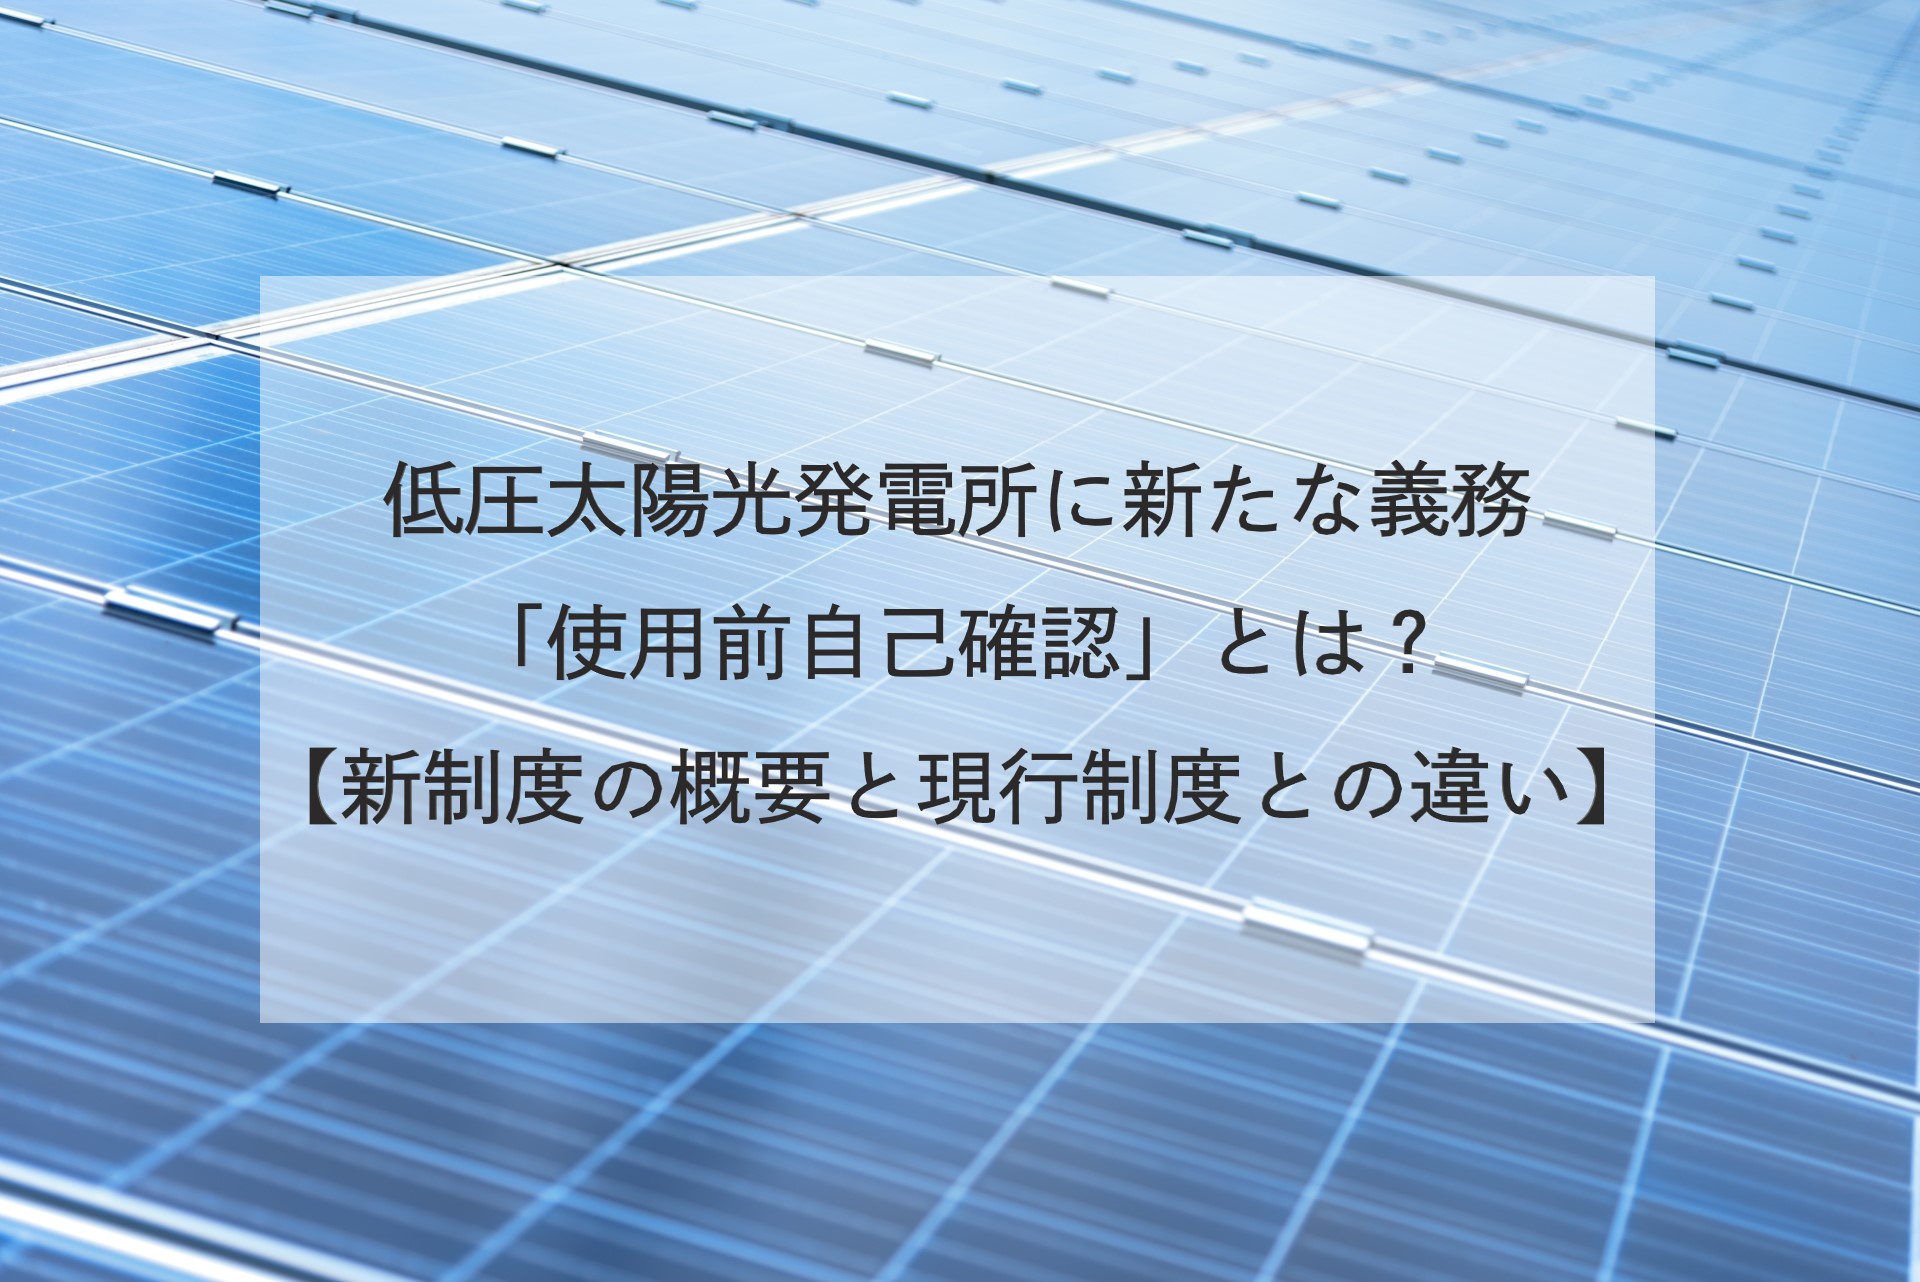 低圧太陽光発電所に新たな義務「使用前自己確認」とは？【新制度の概要と現行制度との違い】